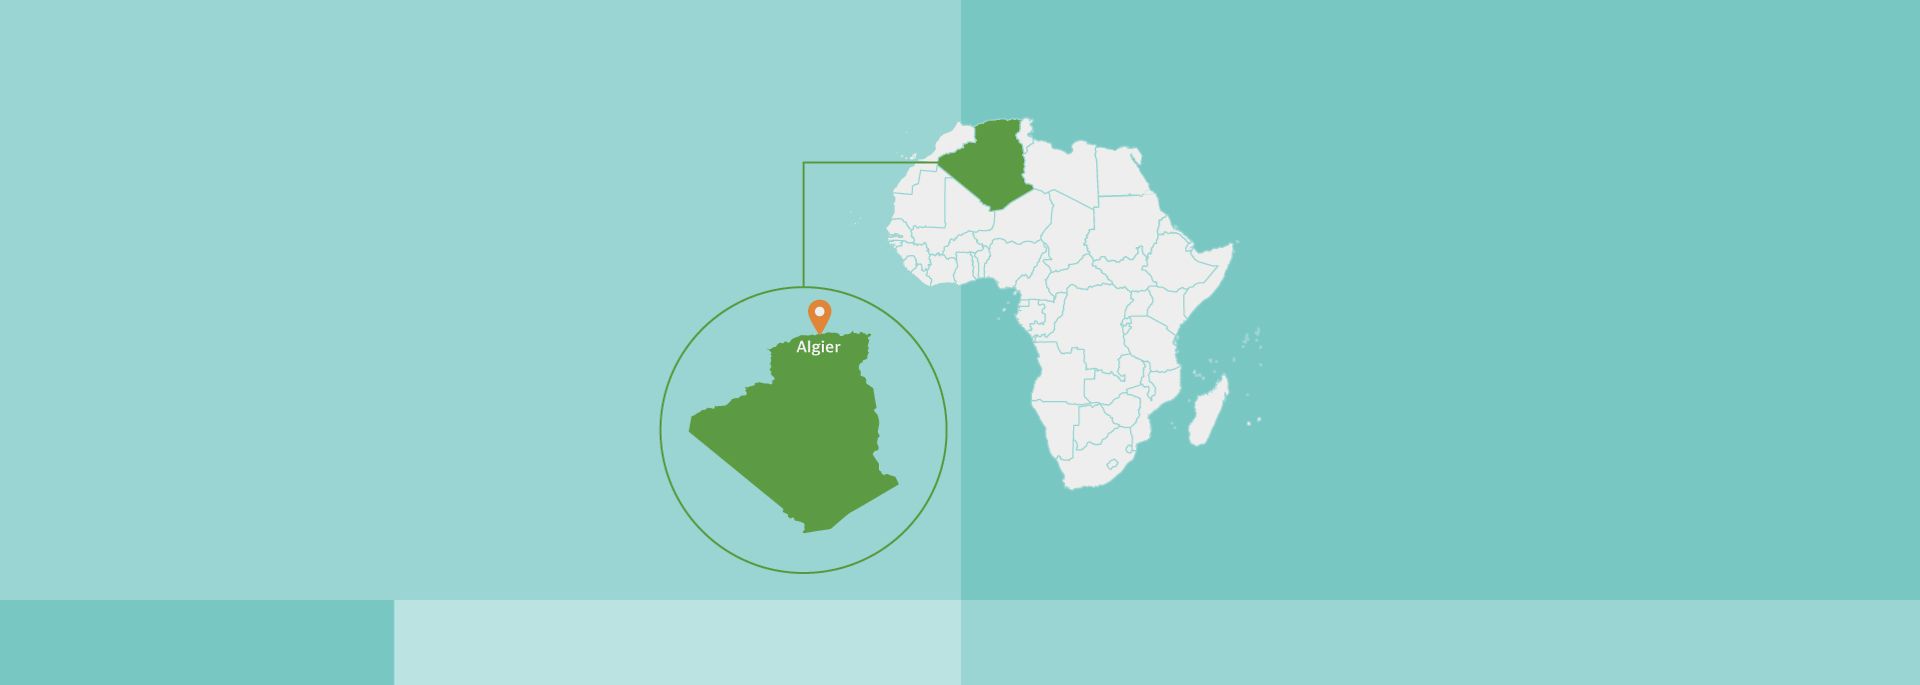 Afrikakarte, Algerien